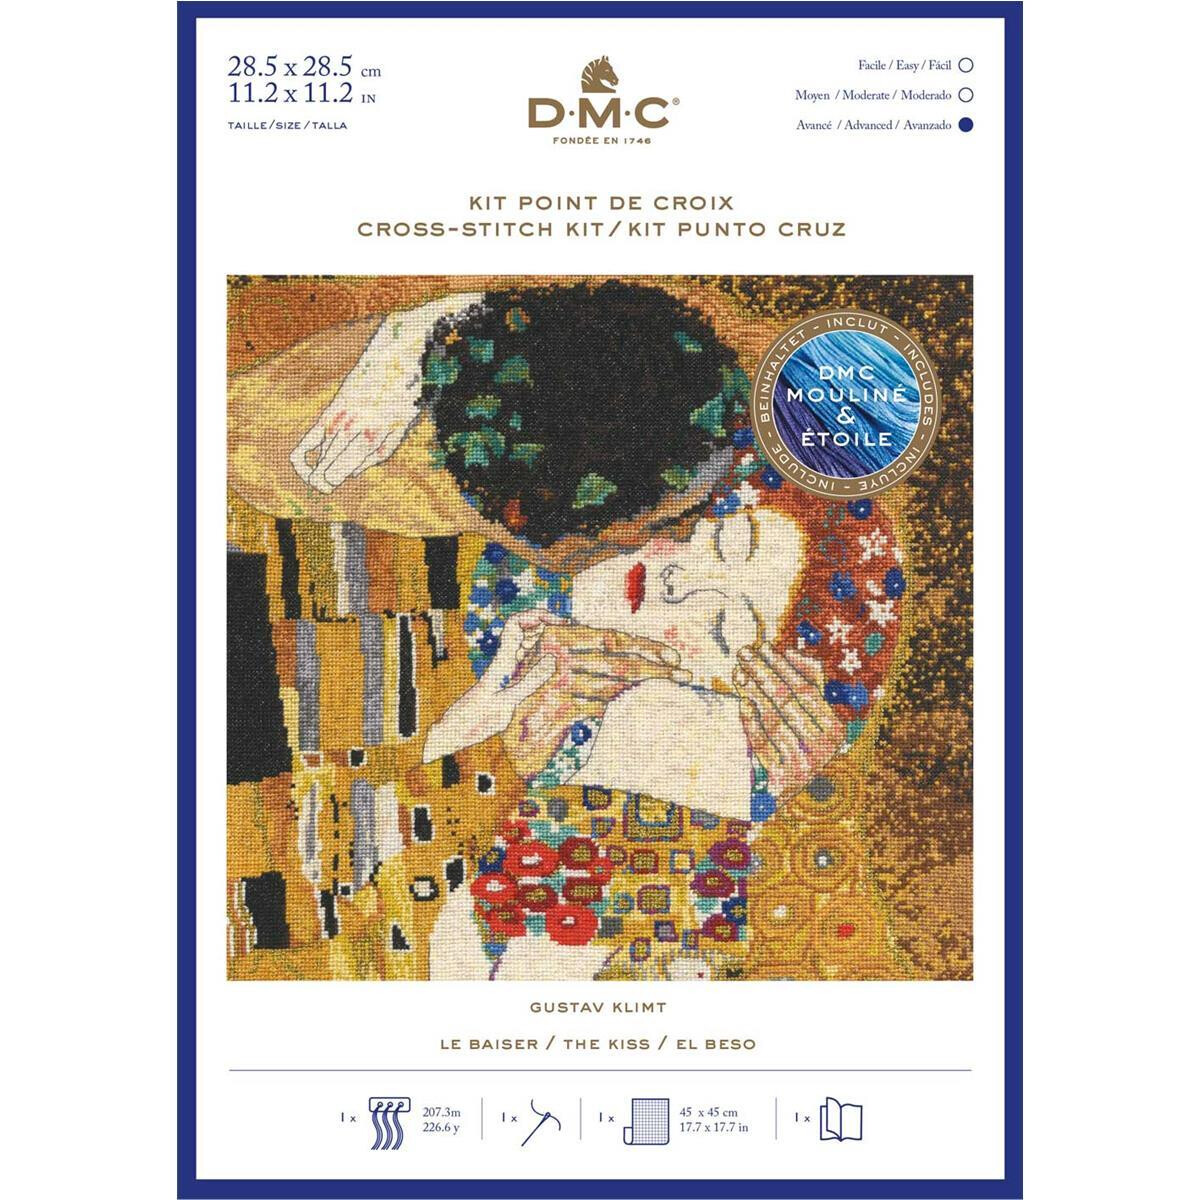 DMC Kruissteekset "Kus" naar Gustav Klimt,...